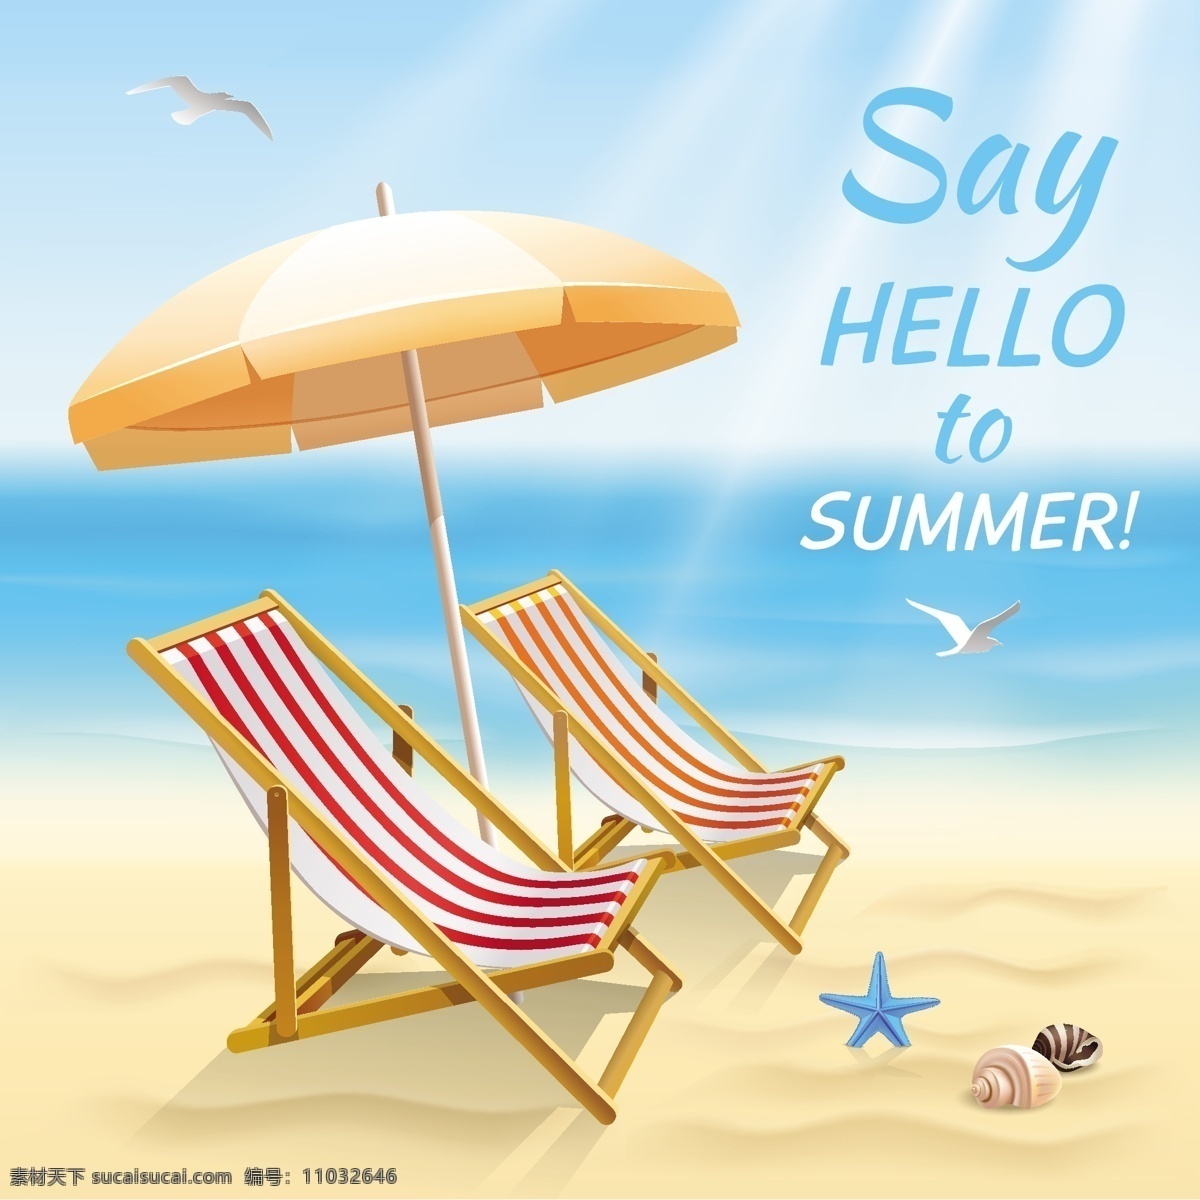 浪漫海滩躺椅 浪漫海滩 海边 躺椅 遮阳伞 海星 沙滩 日光浴 浪漫 手绘 夏季海报